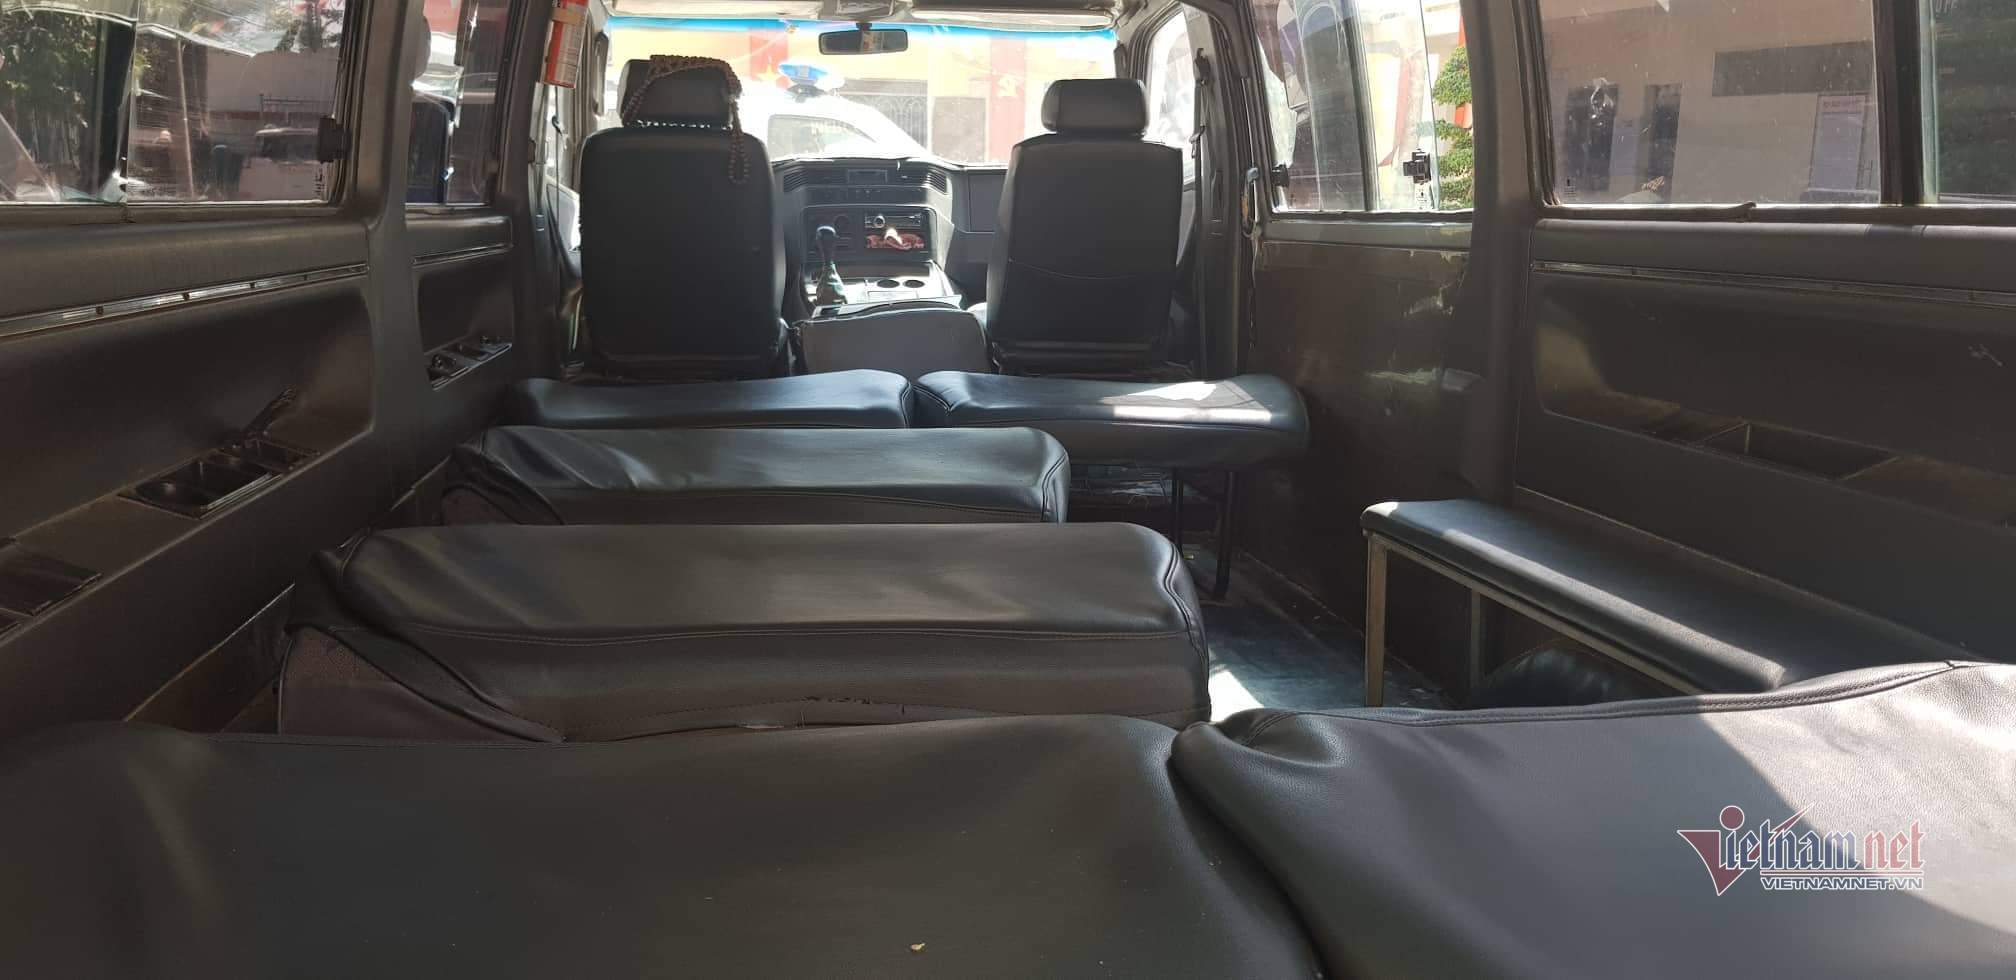 Hàng ghế bên trong của một xe đưa đón bị bỏ phần lưng tựa